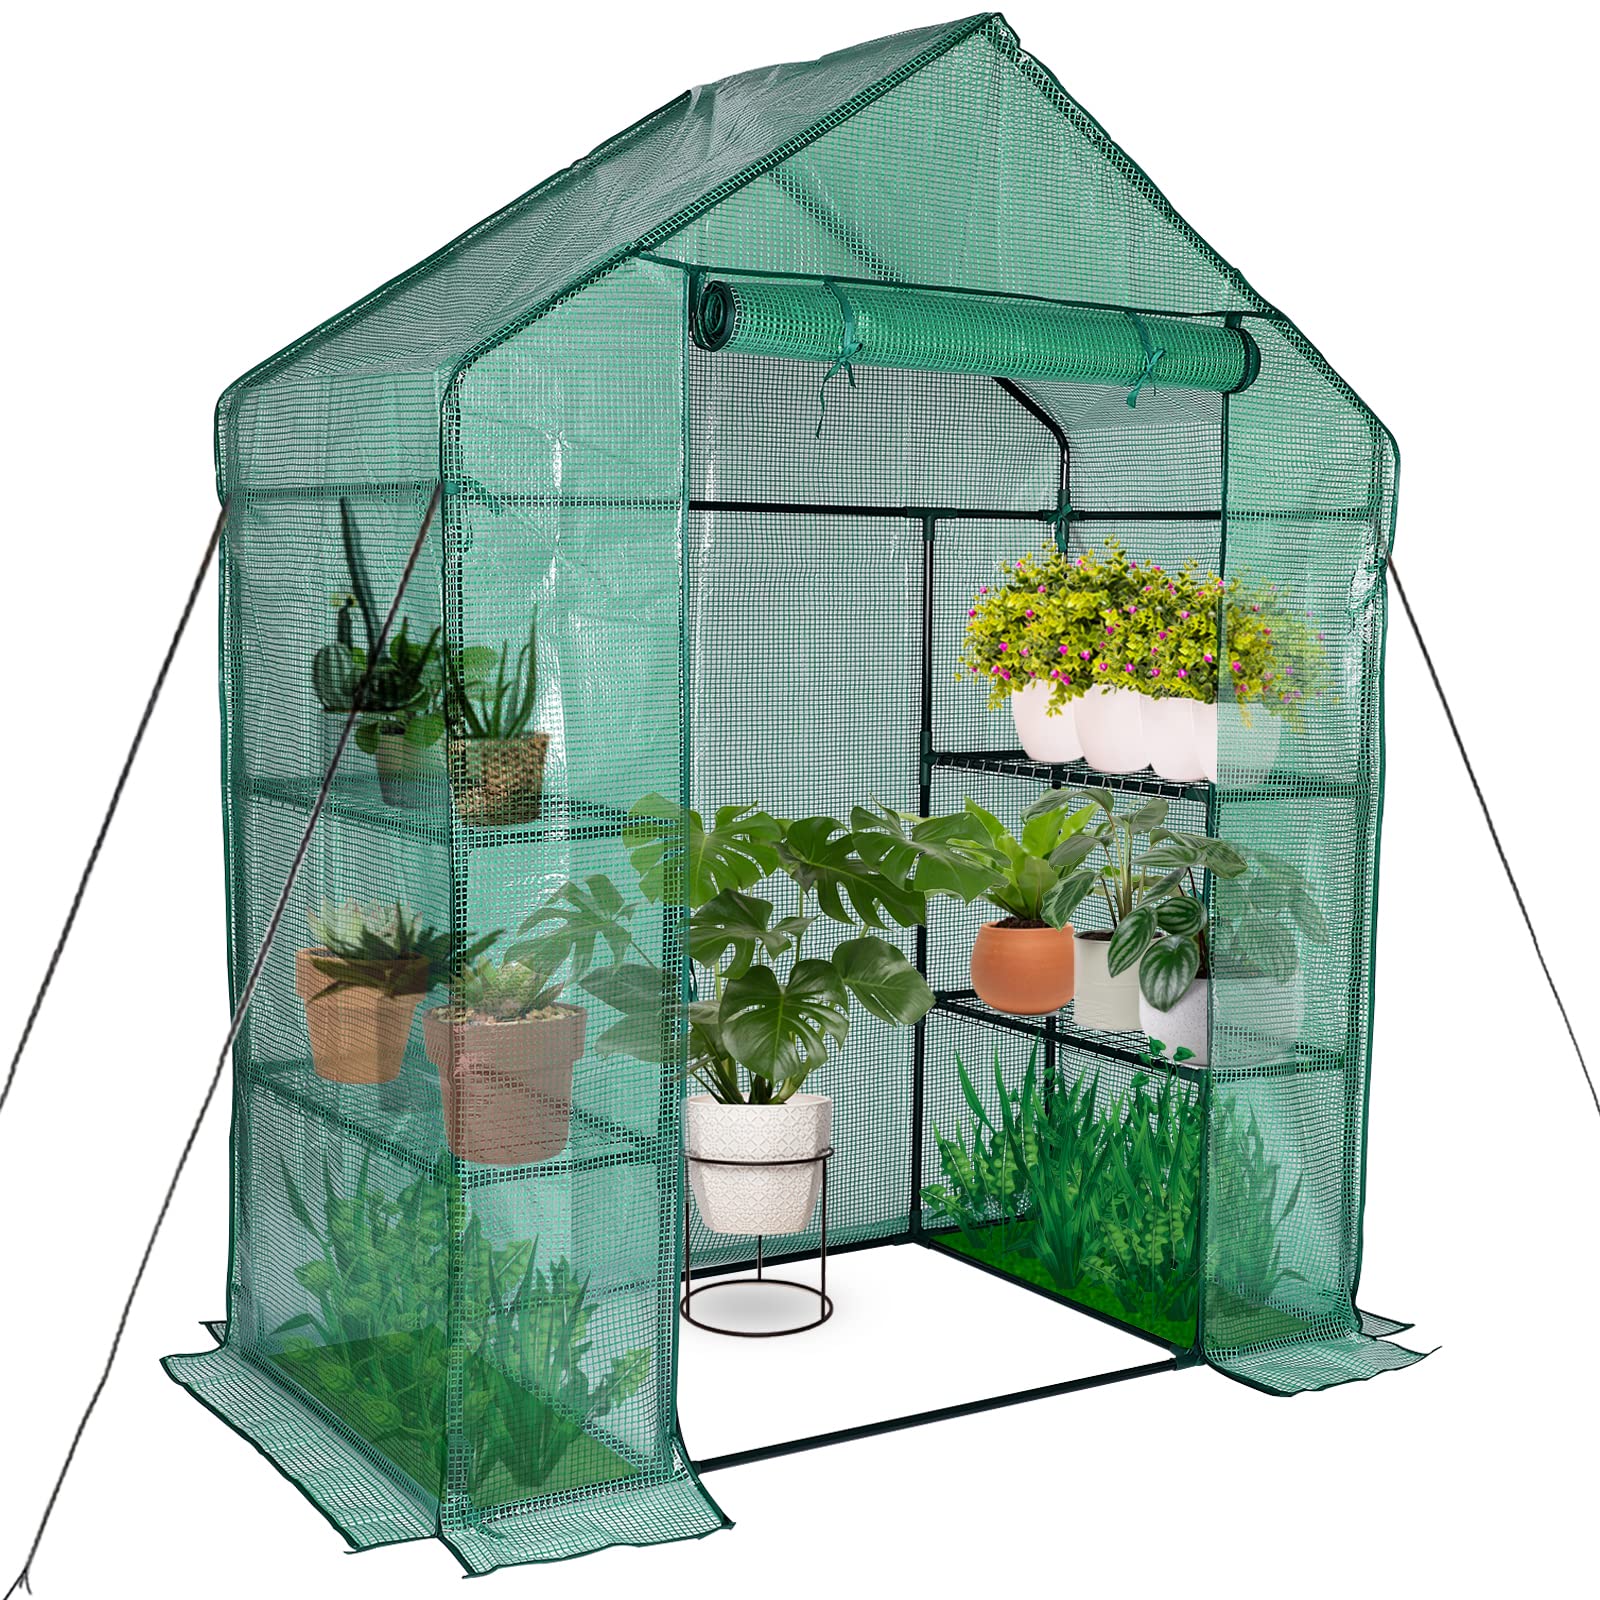 Types of Greenhouses缩略图